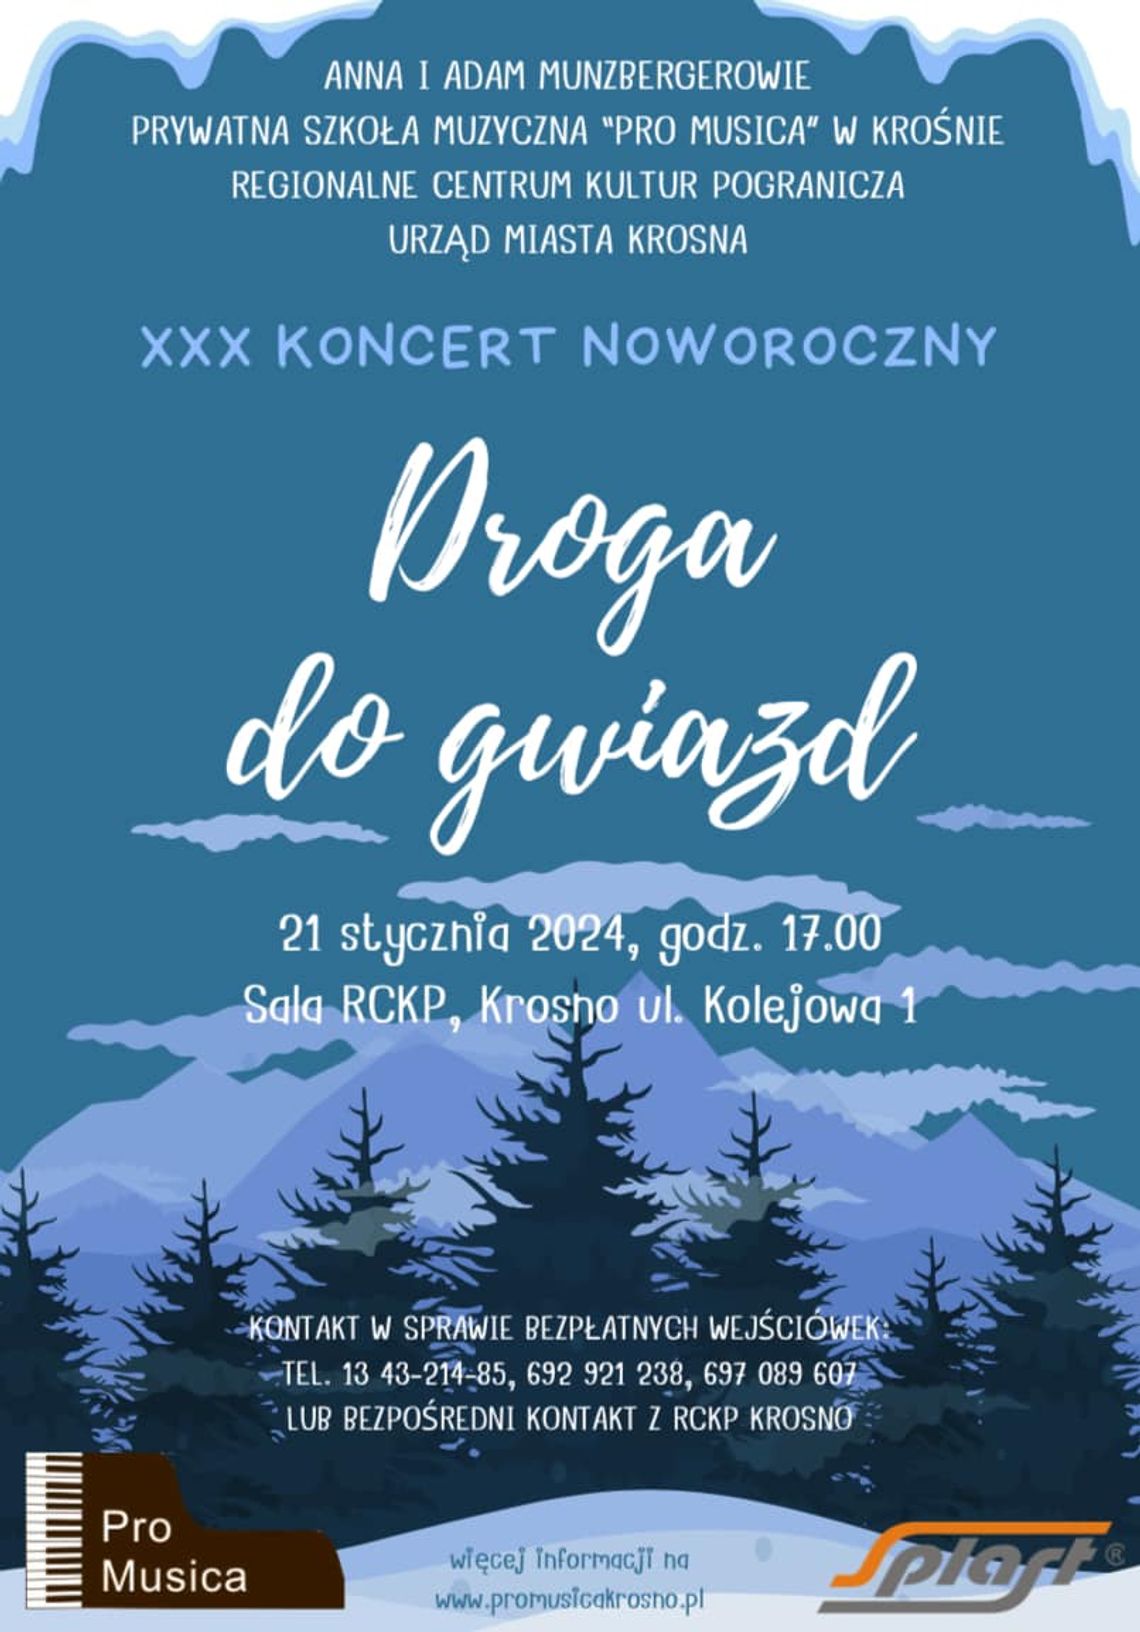 XXX Koncert Noworoczny „Droga do gwiazd” | halogorlice.info